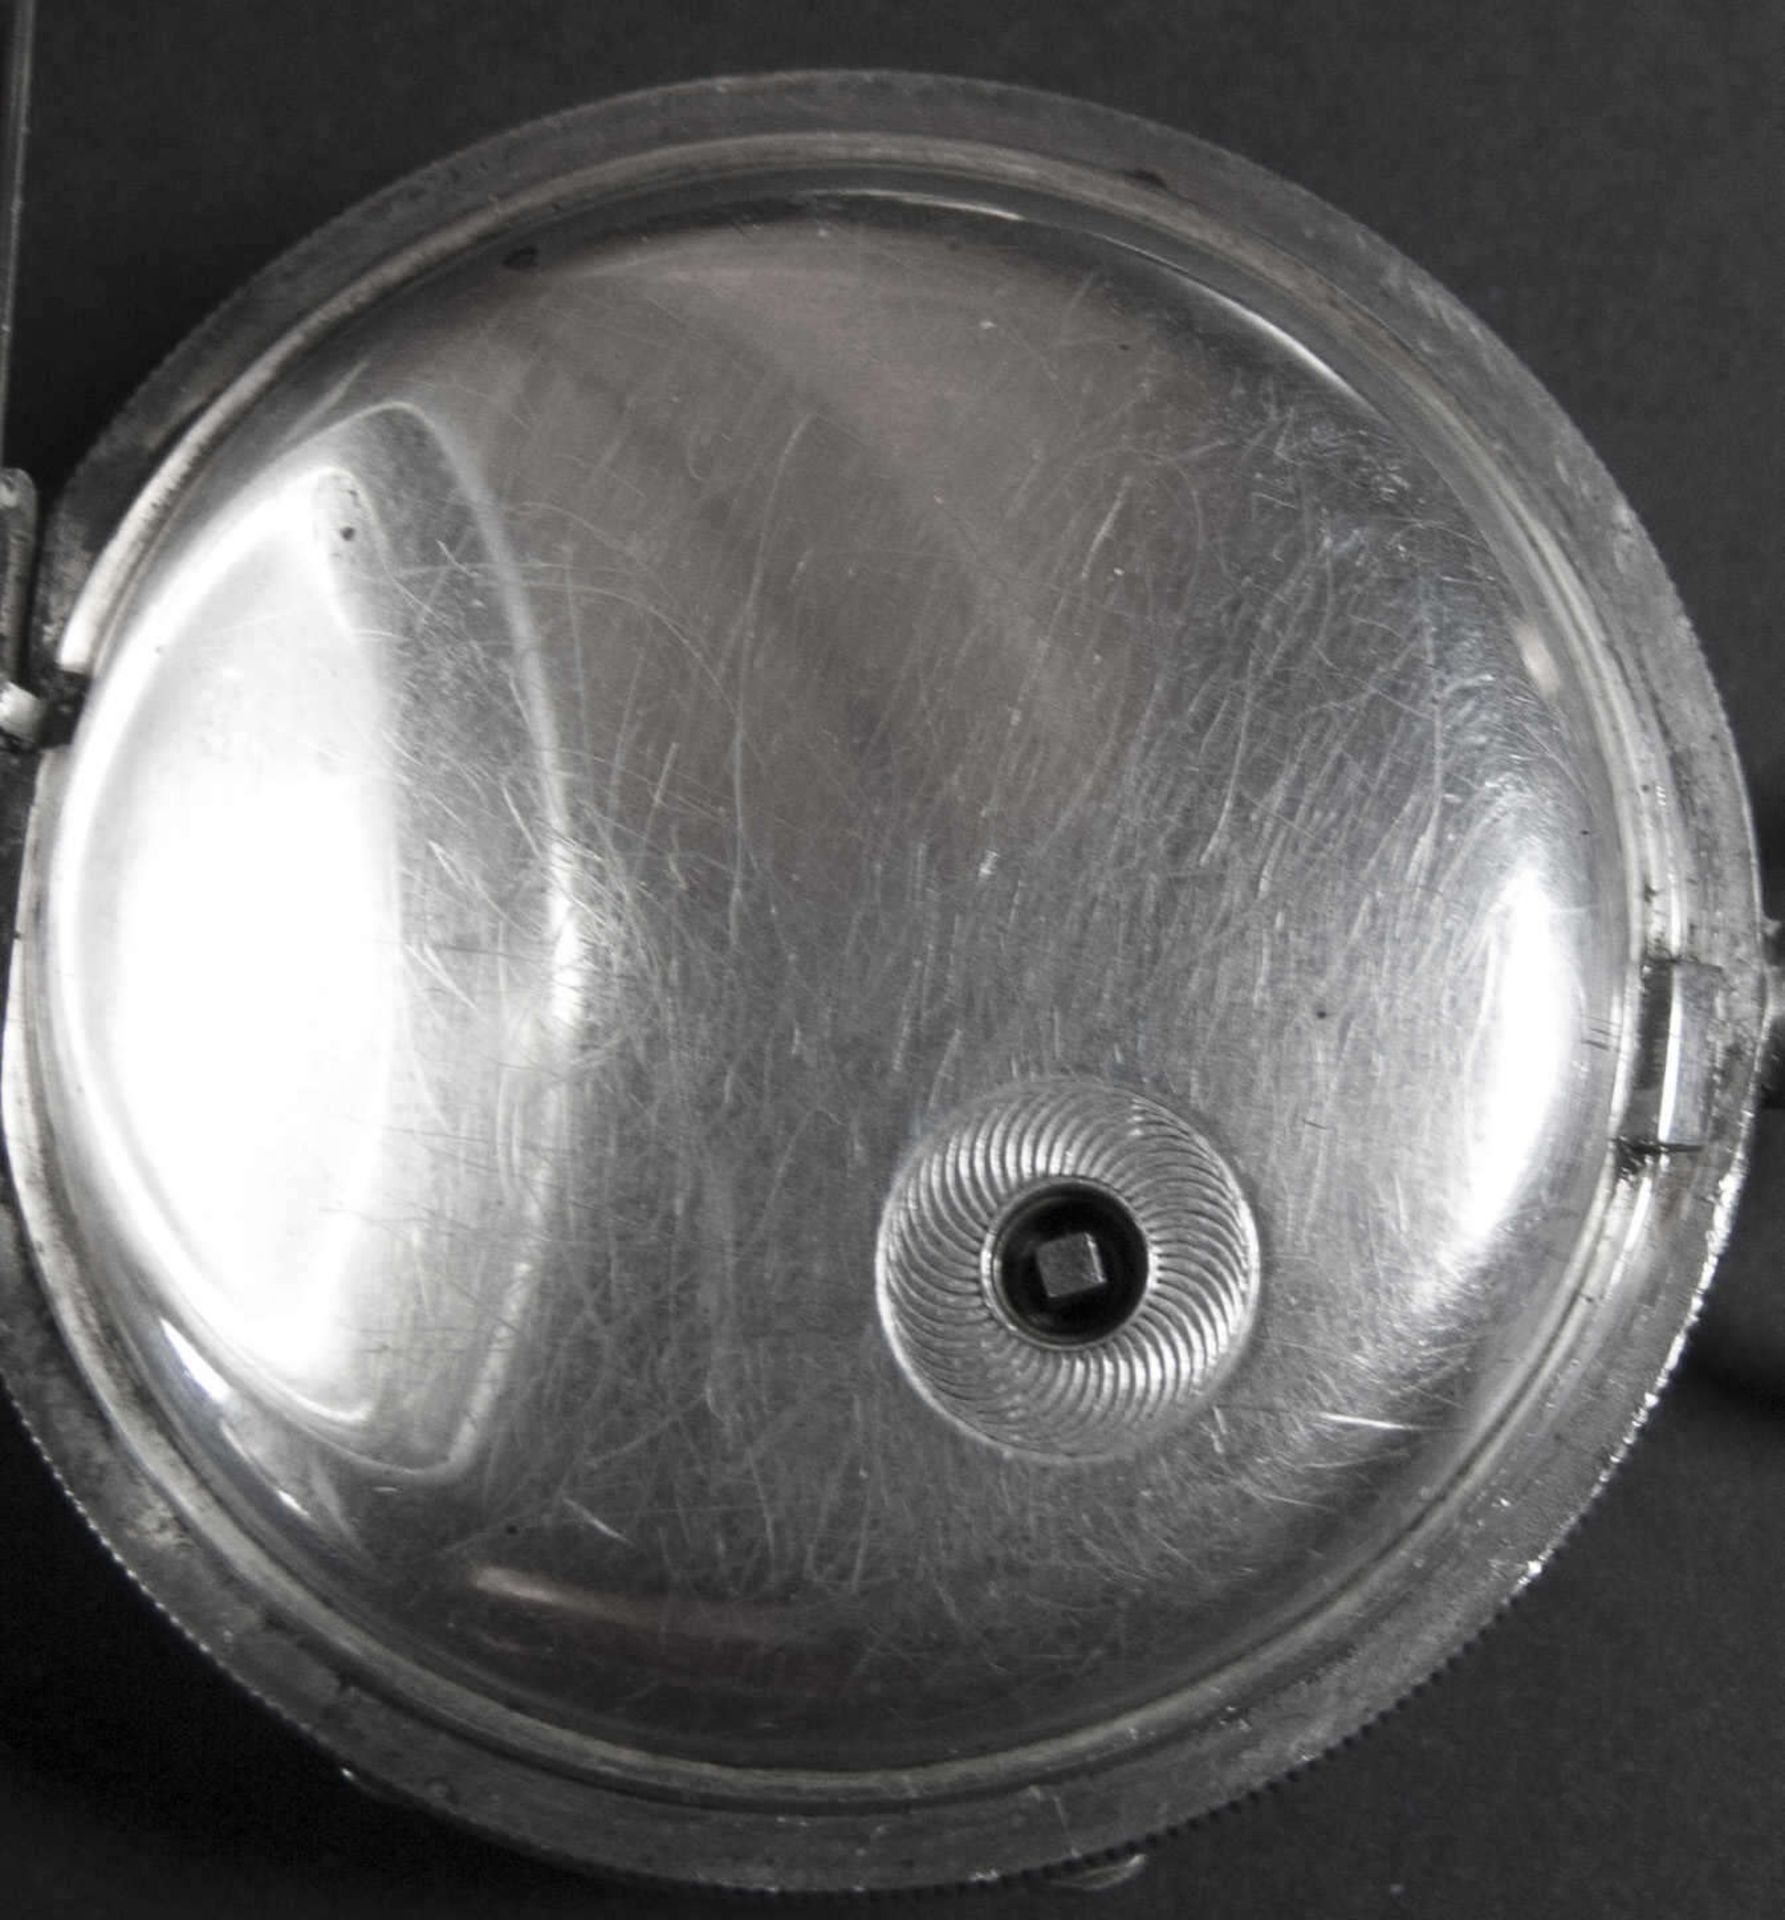 J . G. Graves Sheffield - Taschenuhr mit Schlüssel. Um 1904. Silber. Die Uhr läuft nicht an. - Image 4 of 4